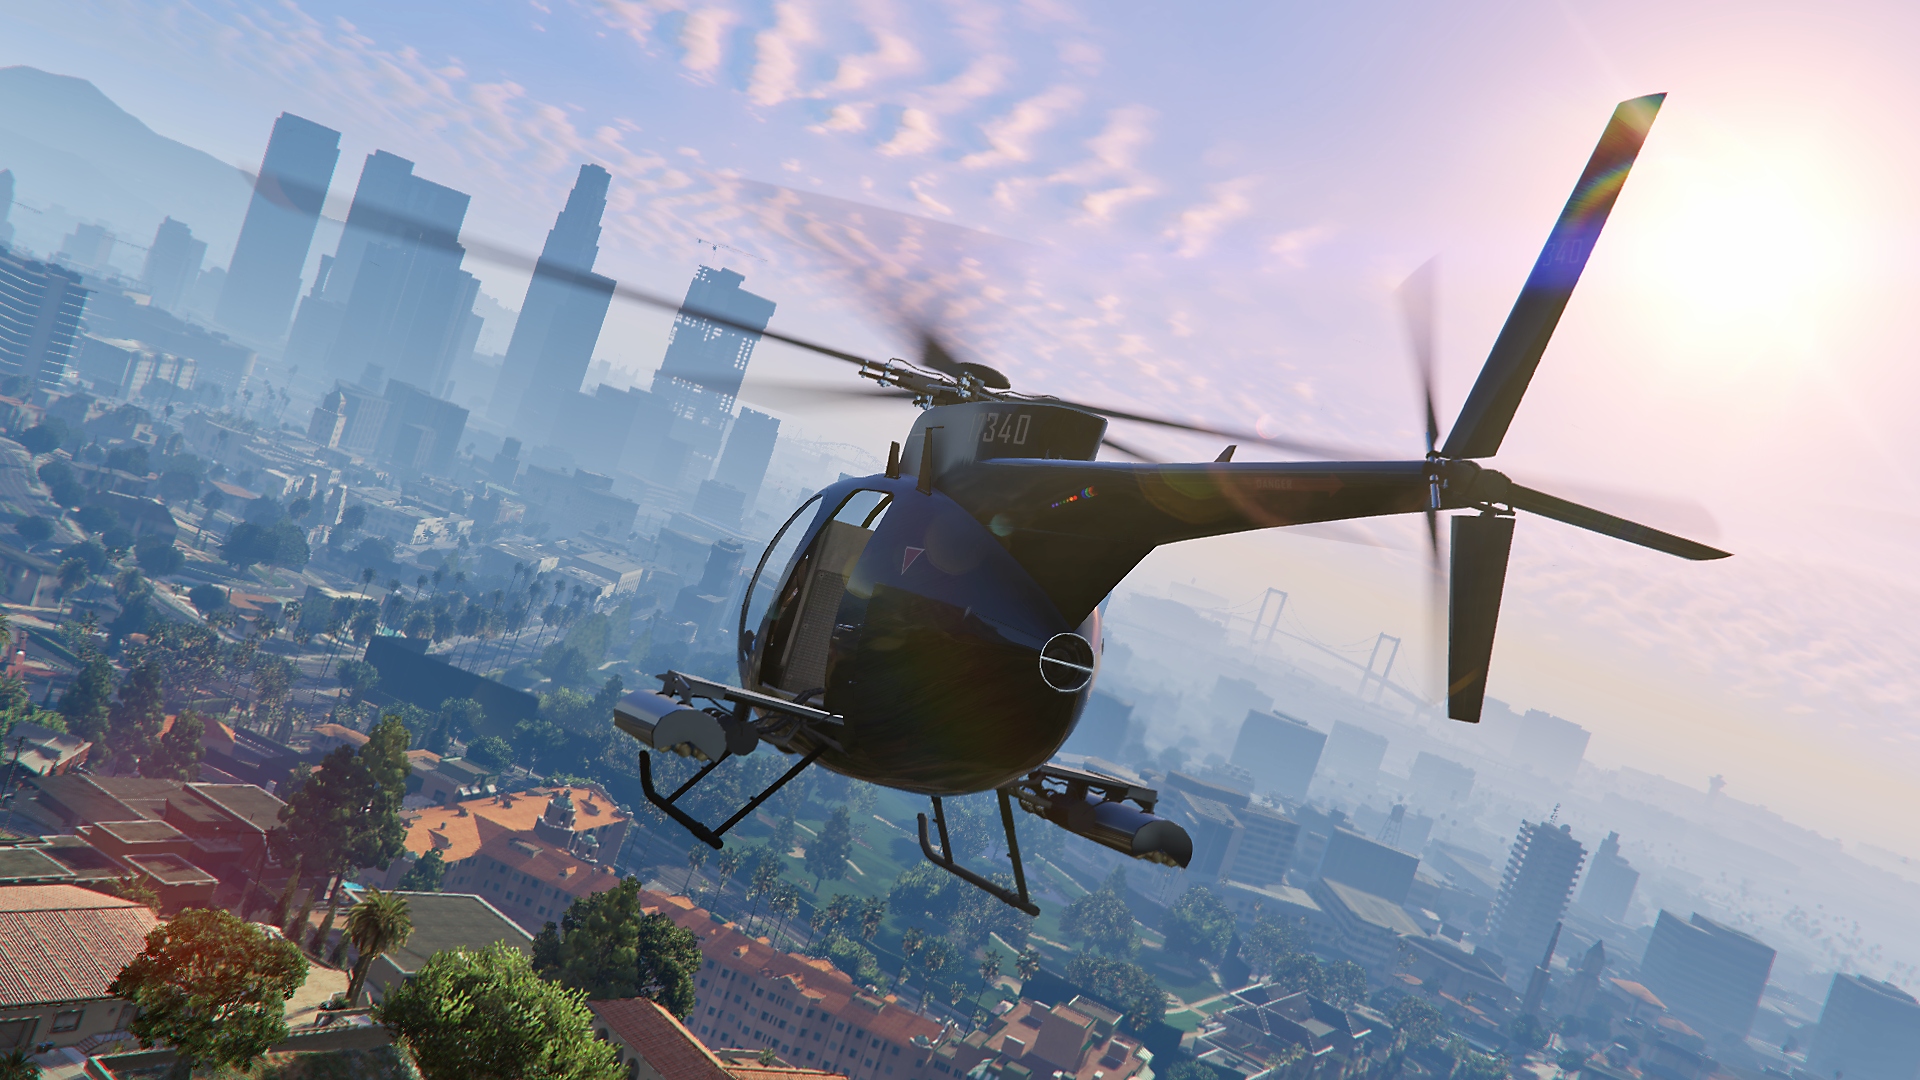 Capture d'écran de Grand Theft Auto V - hélicoptère en plein vol, avec la ville en arrière-plan